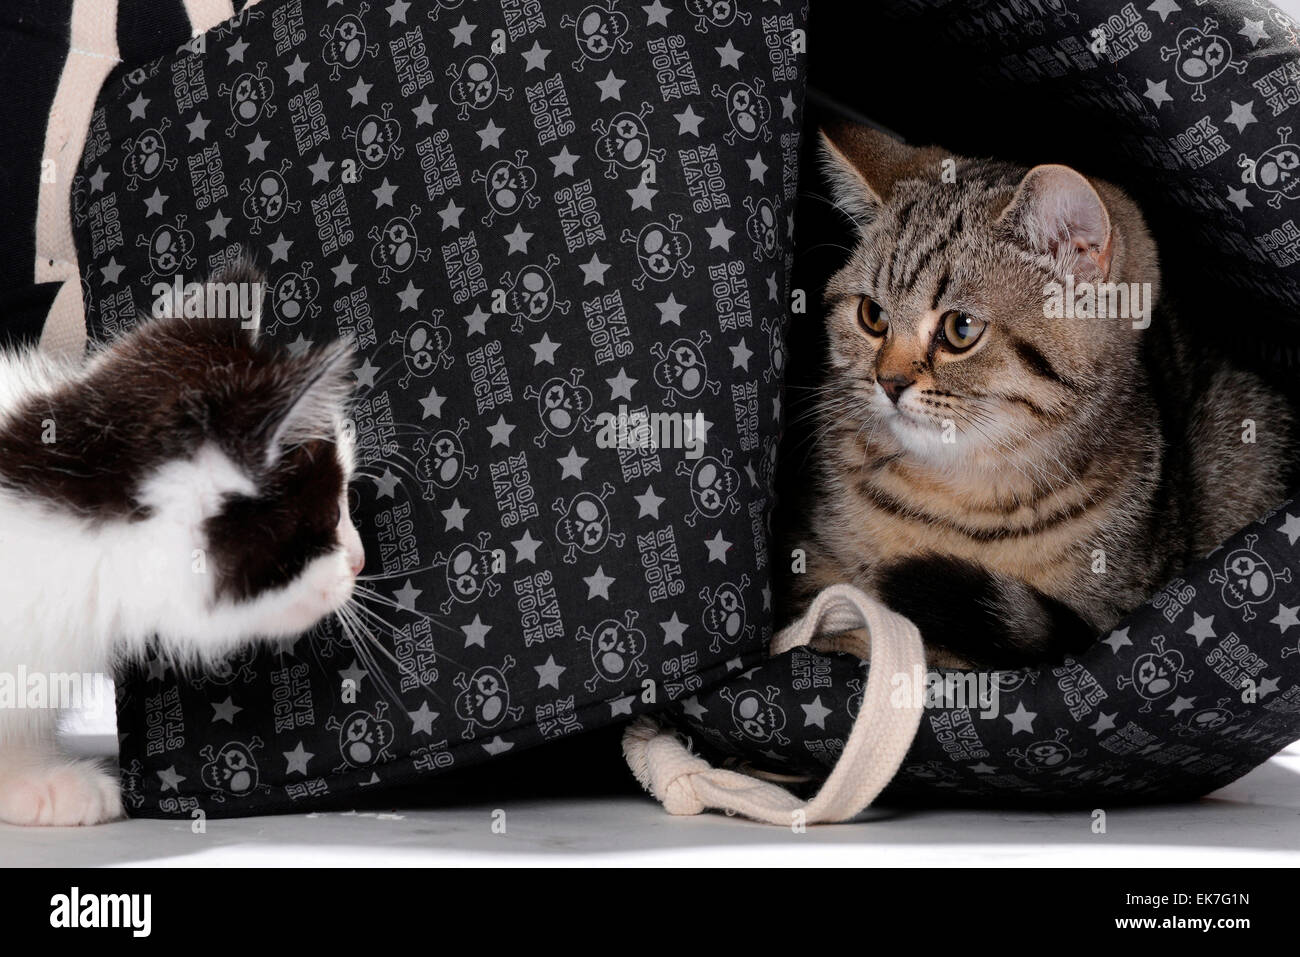 British Shorthair gato gato doméstico atigrado gatito 3 mes de edad mirando en blanco y negro gatito Alemania Foto de stock